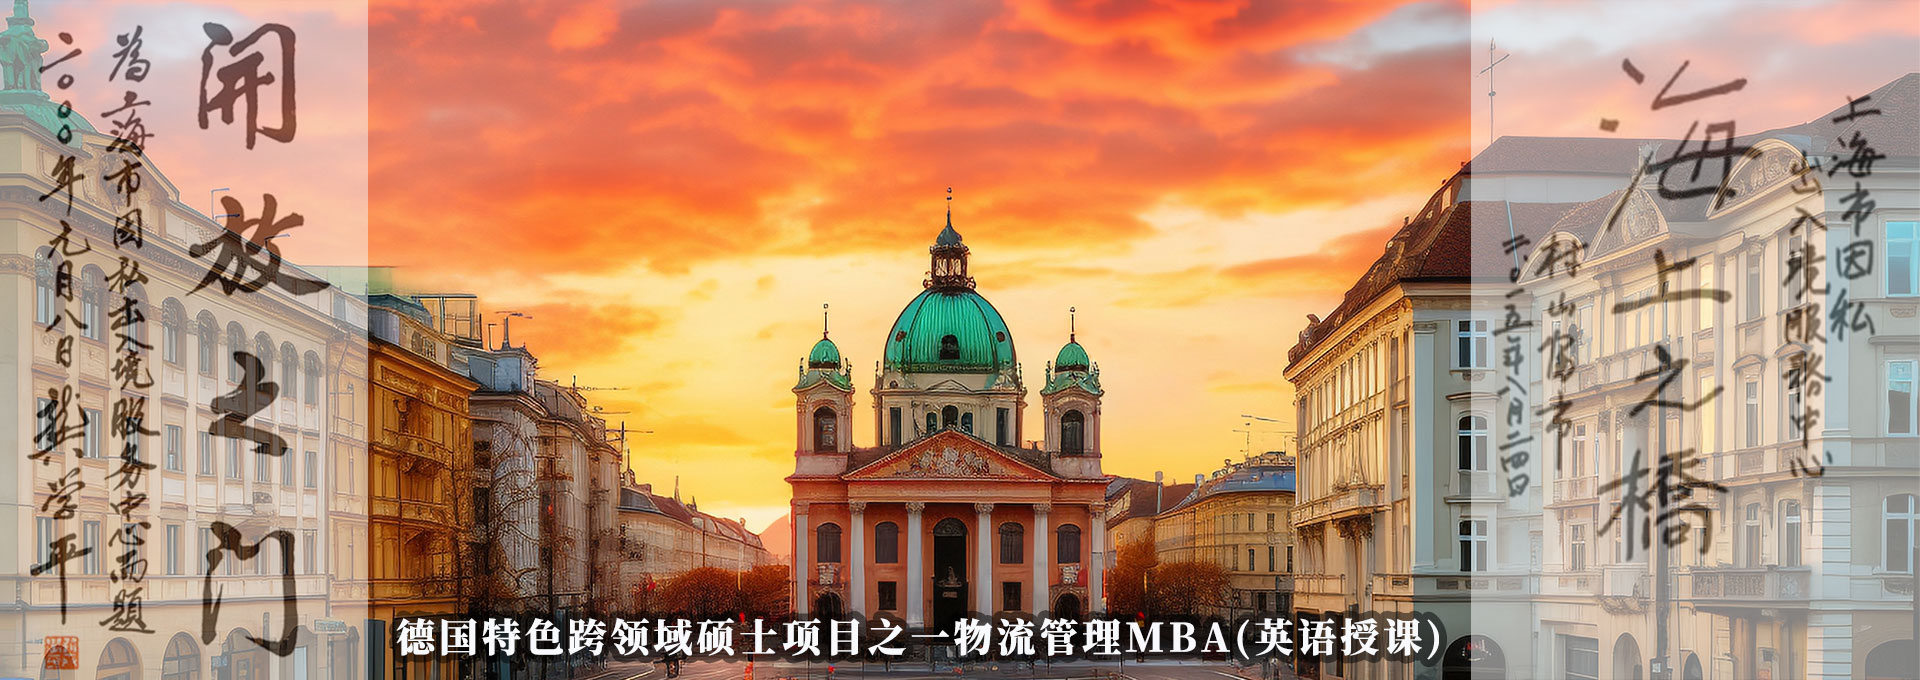 德国特色跨领域硕士项目之一物流管理MBA(英语授课)